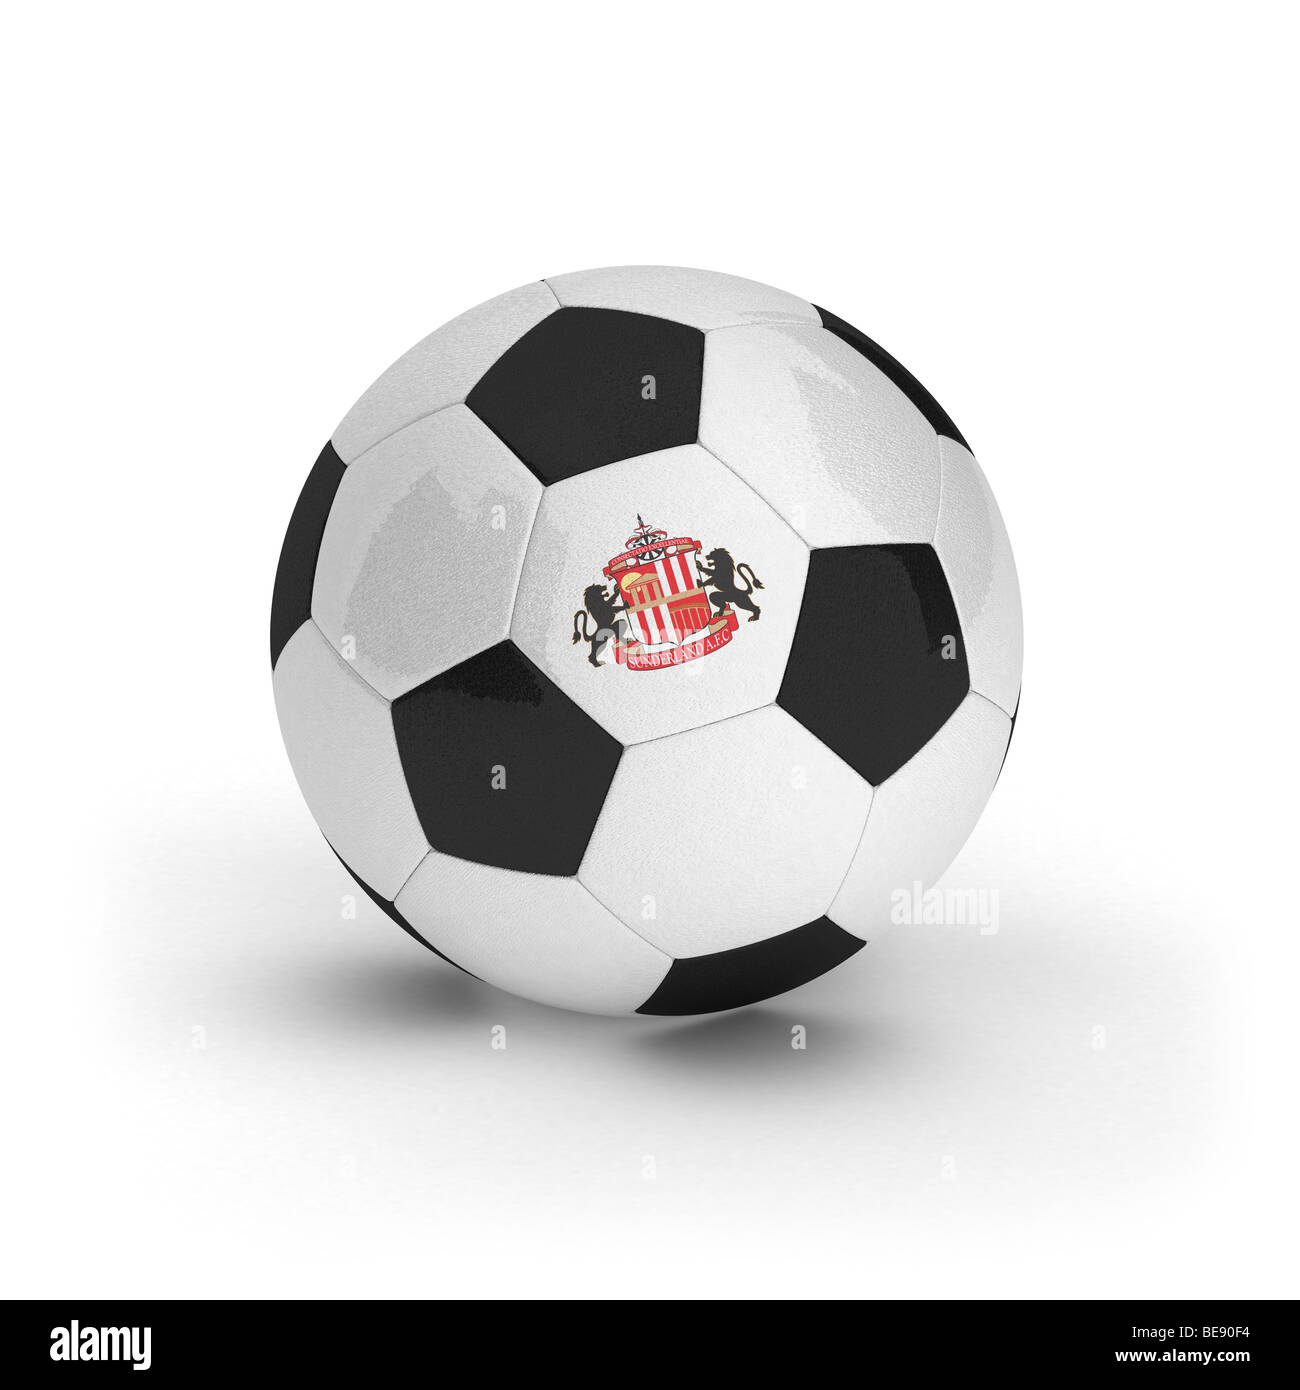 Sunderland Association Football Club emblème sur un ballon de foot Banque D'Images